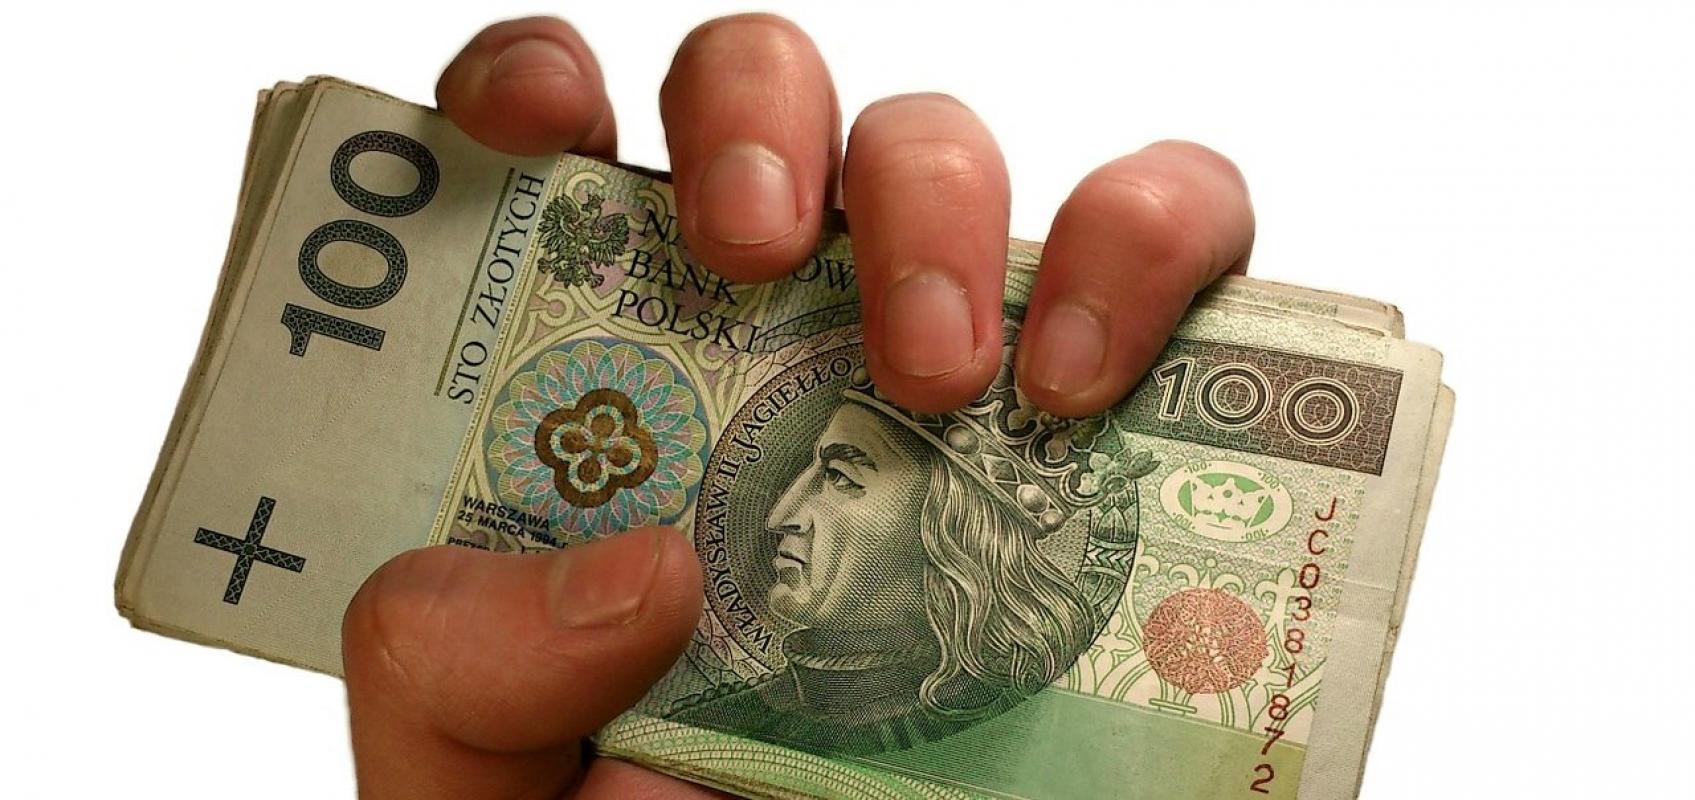 Lenkijoje vidutinis atlyginimas yra 1100 eurų, Lietuvoje - 876,4 eurų